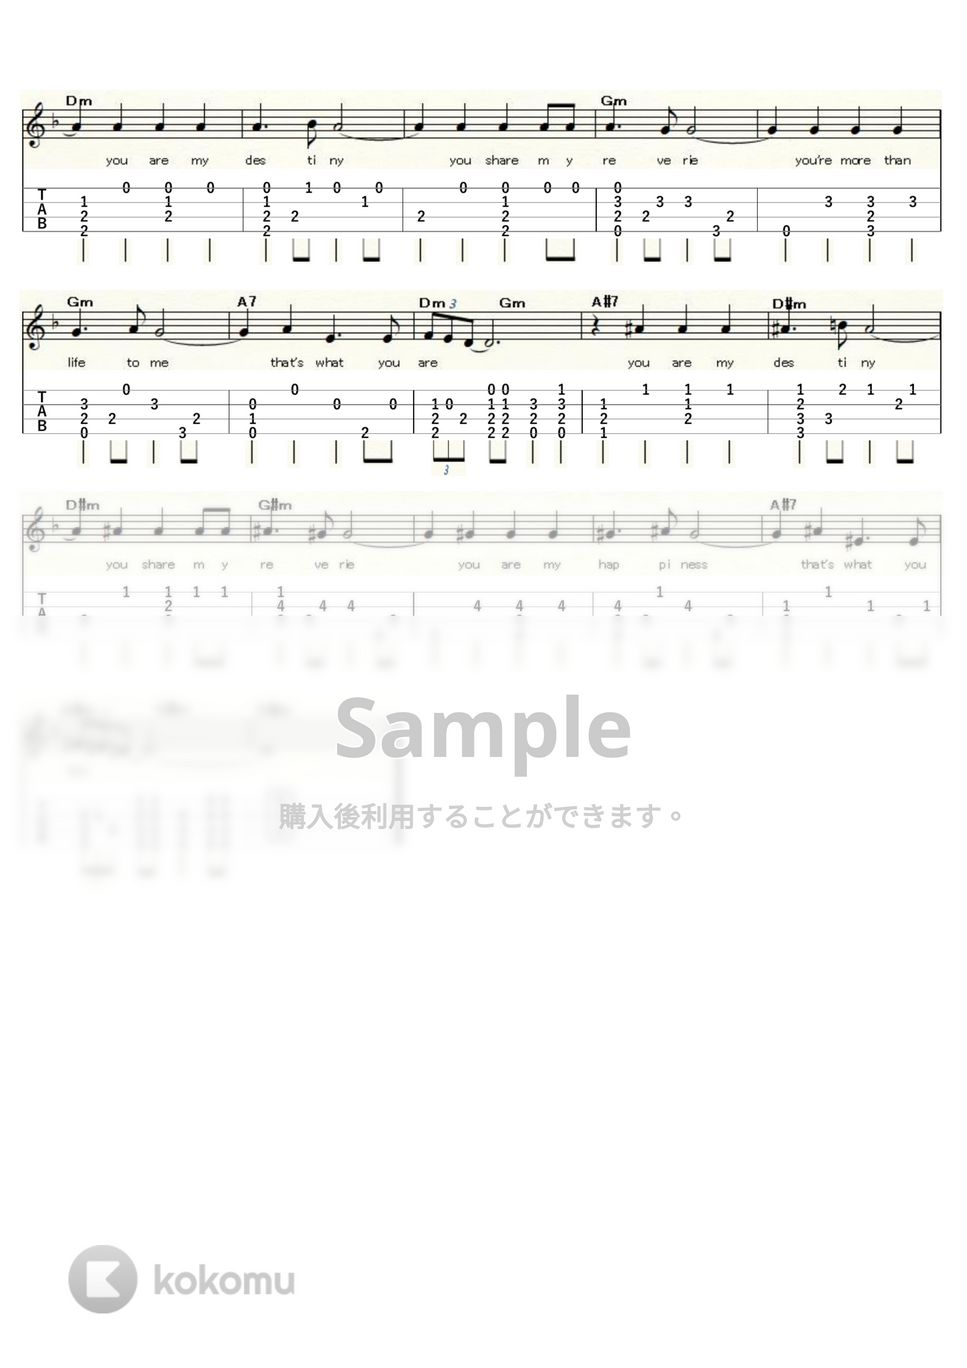 ポール・アンカ - You Are My Destiny (ｳｸﾚﾚｿﾛ/Low-G/中級) by ukulelepapa